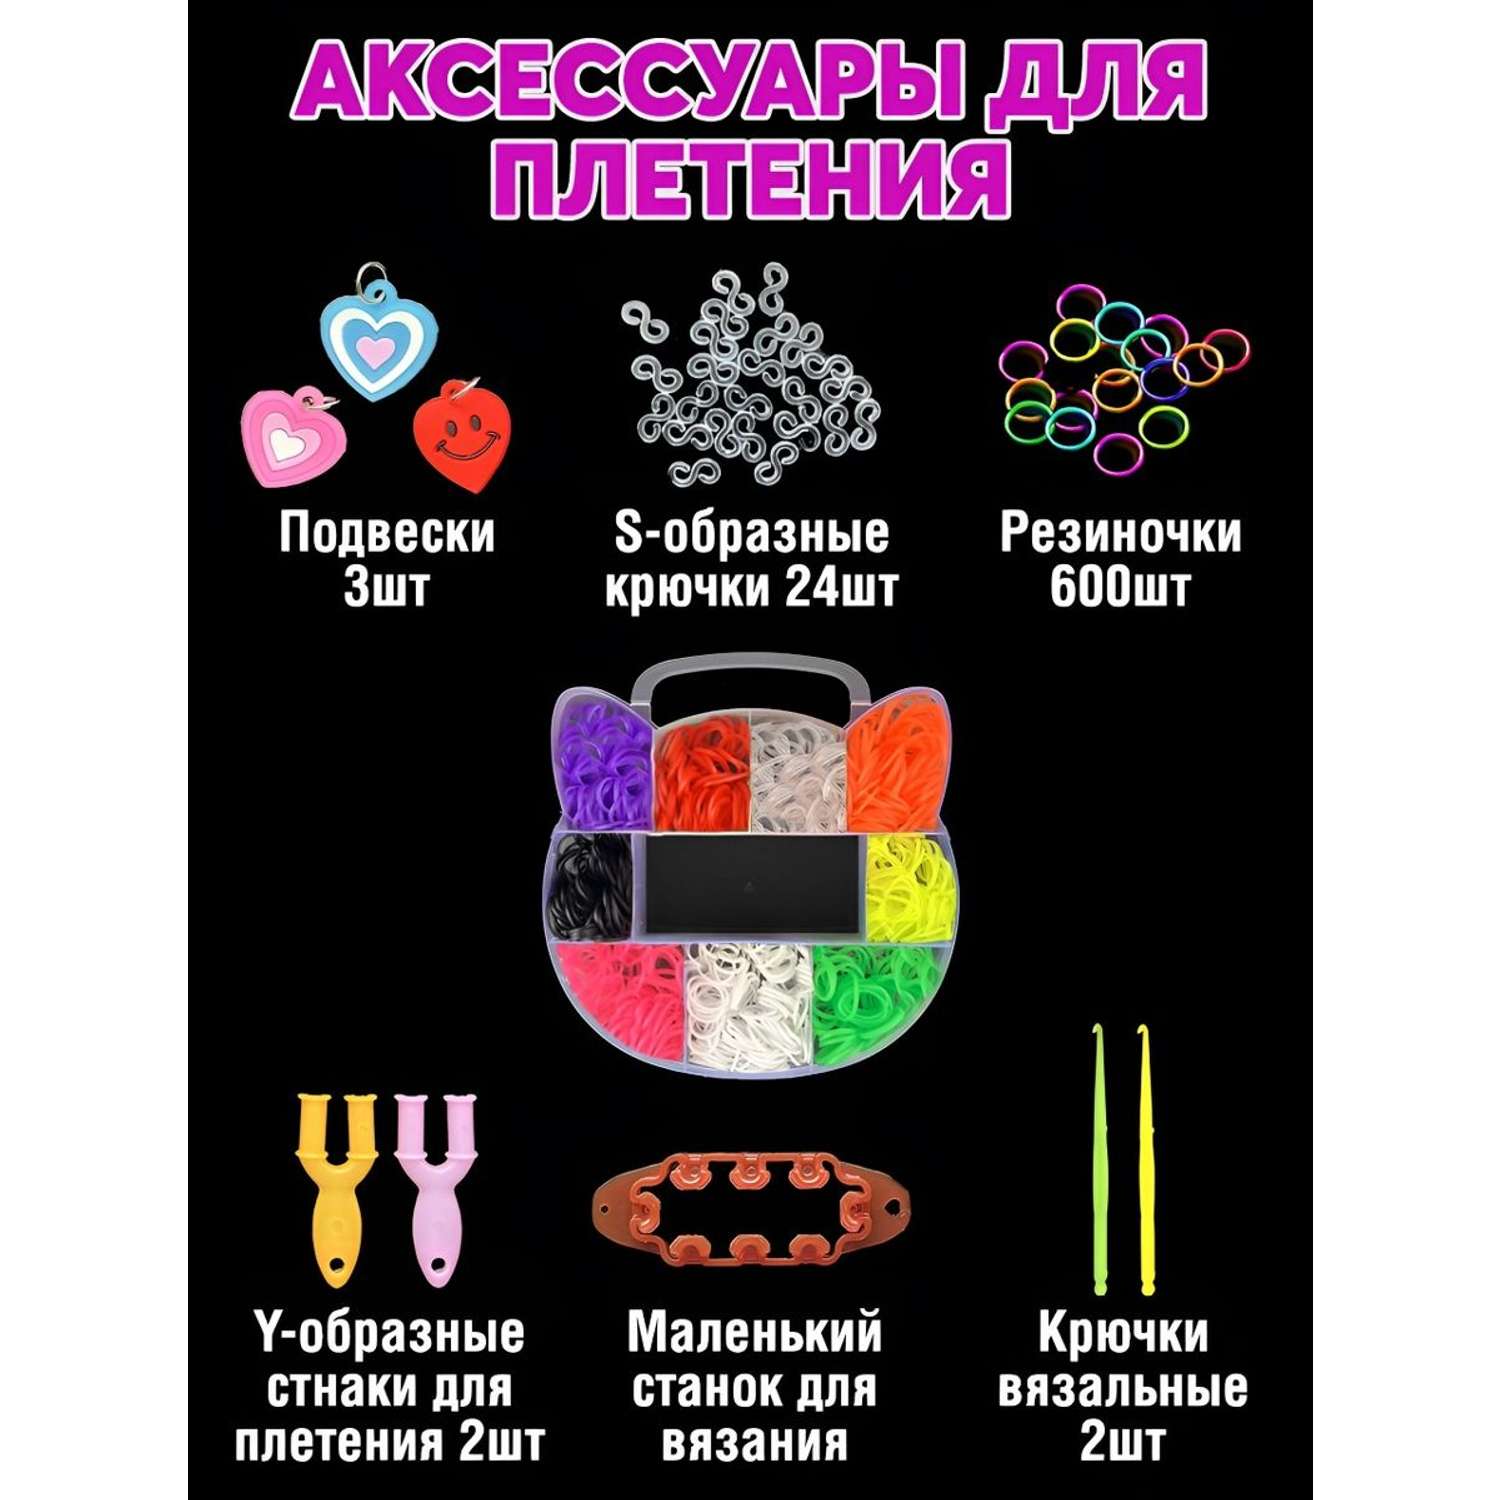 Купить набор резинок с станком оптом в Украине. Интернет-магазин ИгрушкиОпт